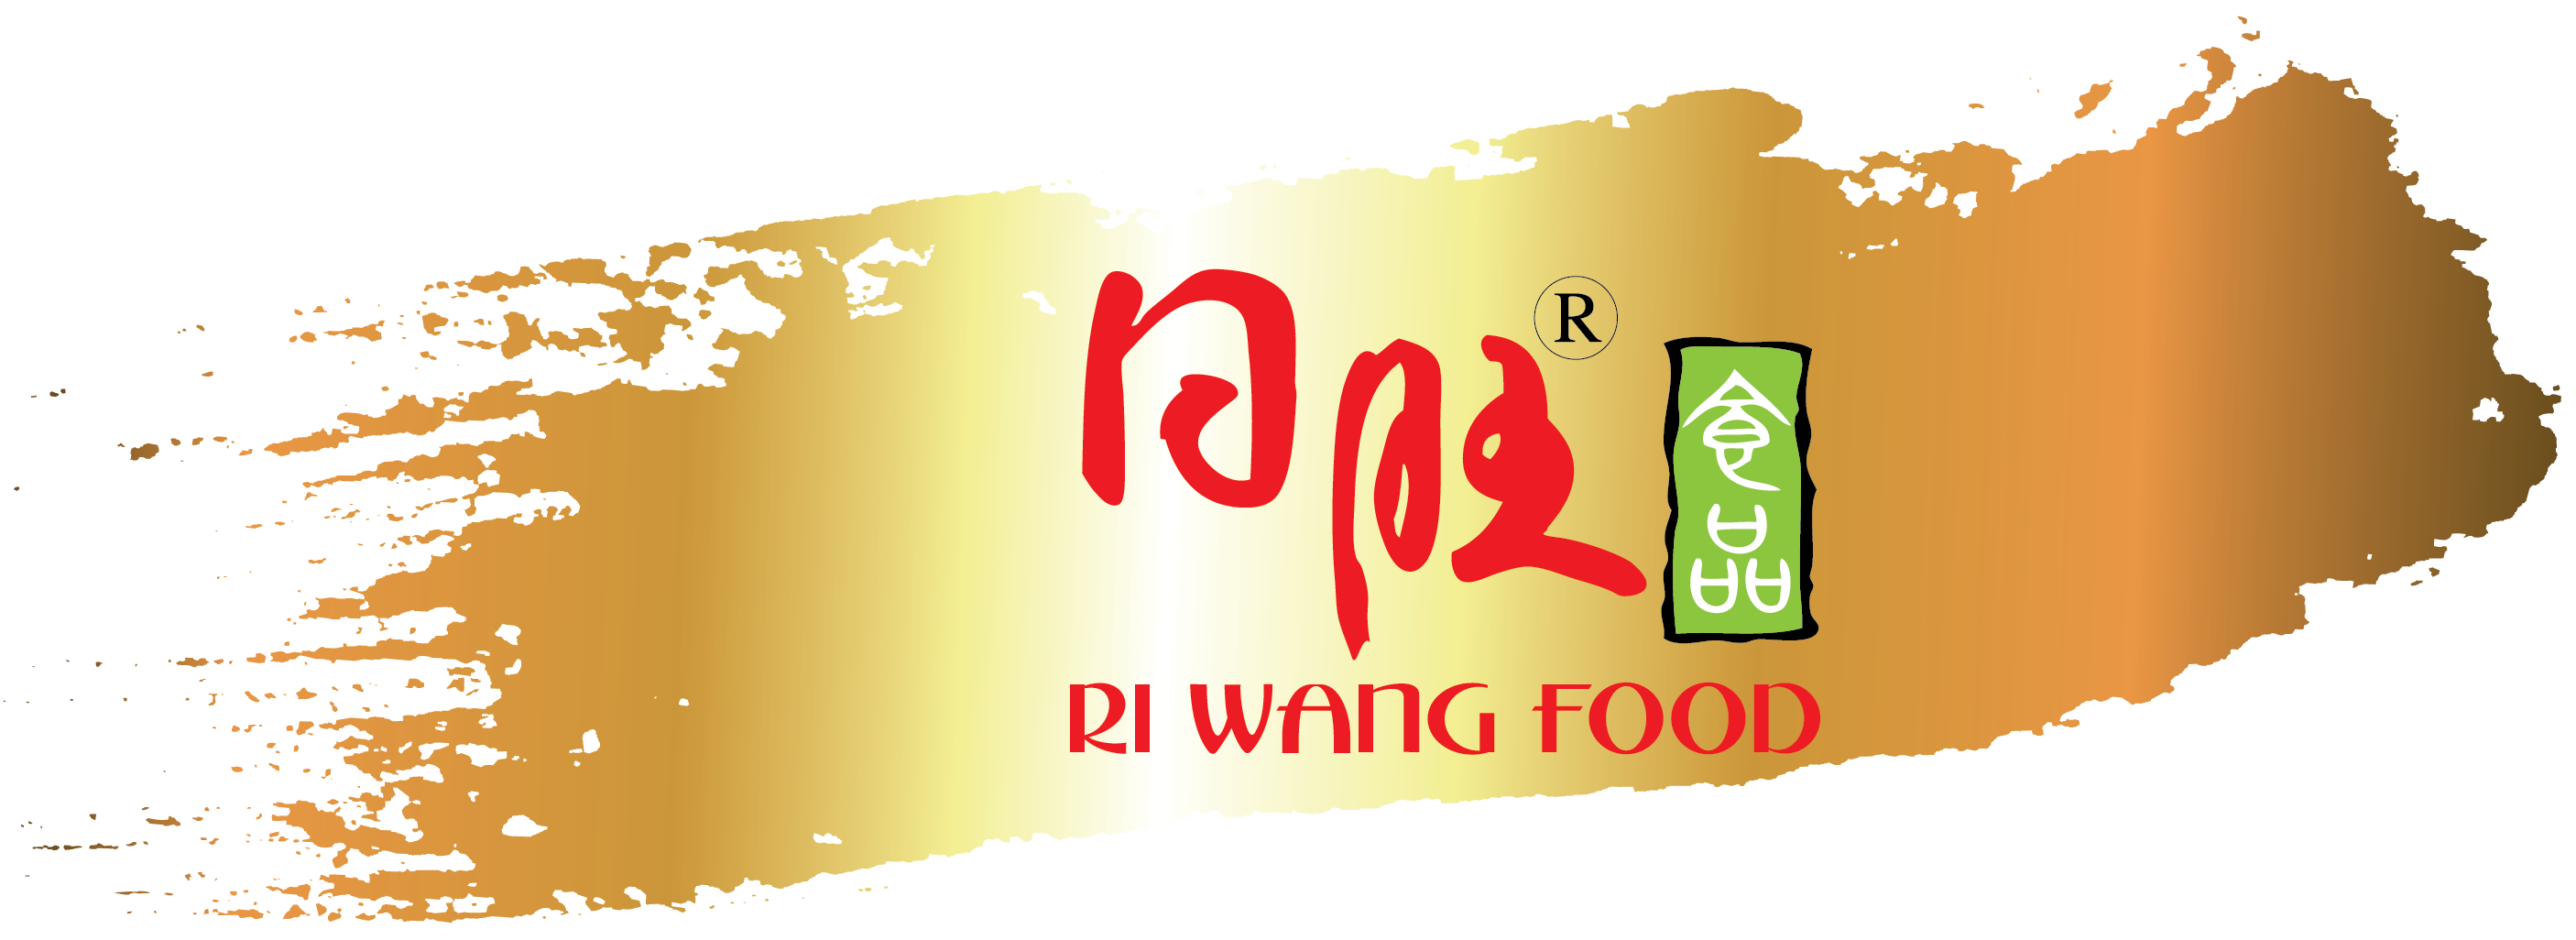 RI WANG FOOD